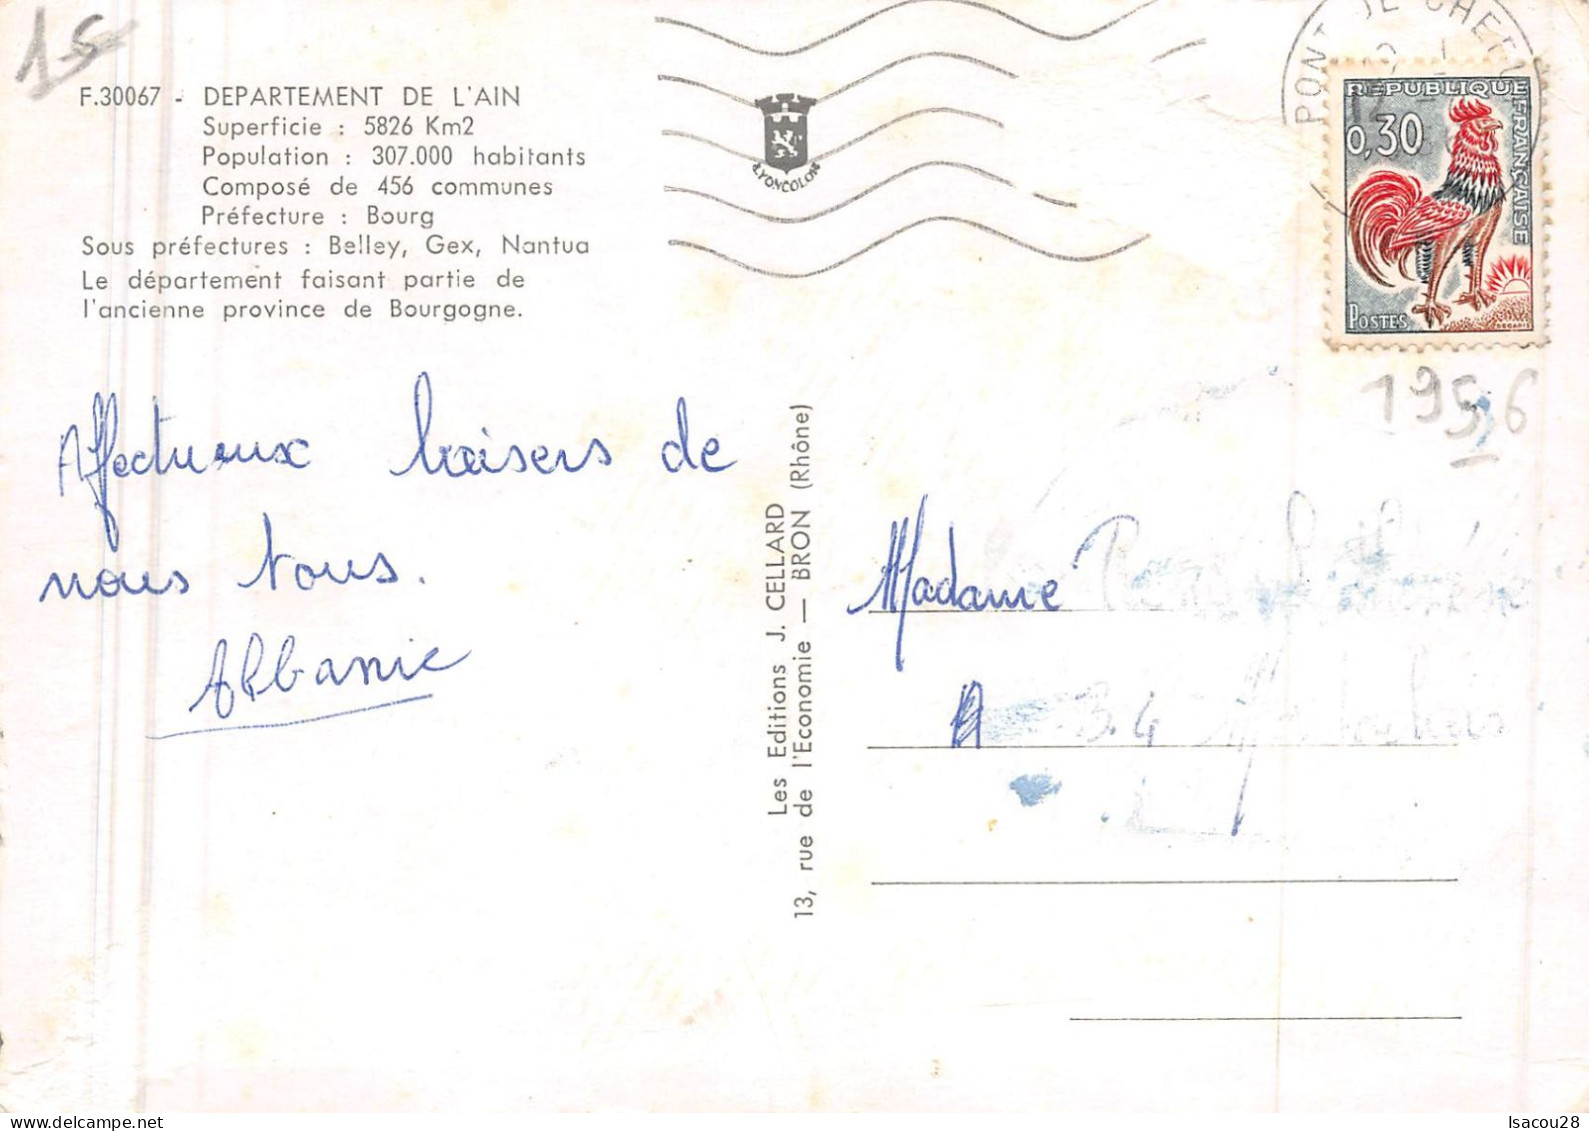 01 - Ain - Carte De Département Avec Vues Ancienne Province De Bourgogne - 1956 - Editions Cellard - Non Classés